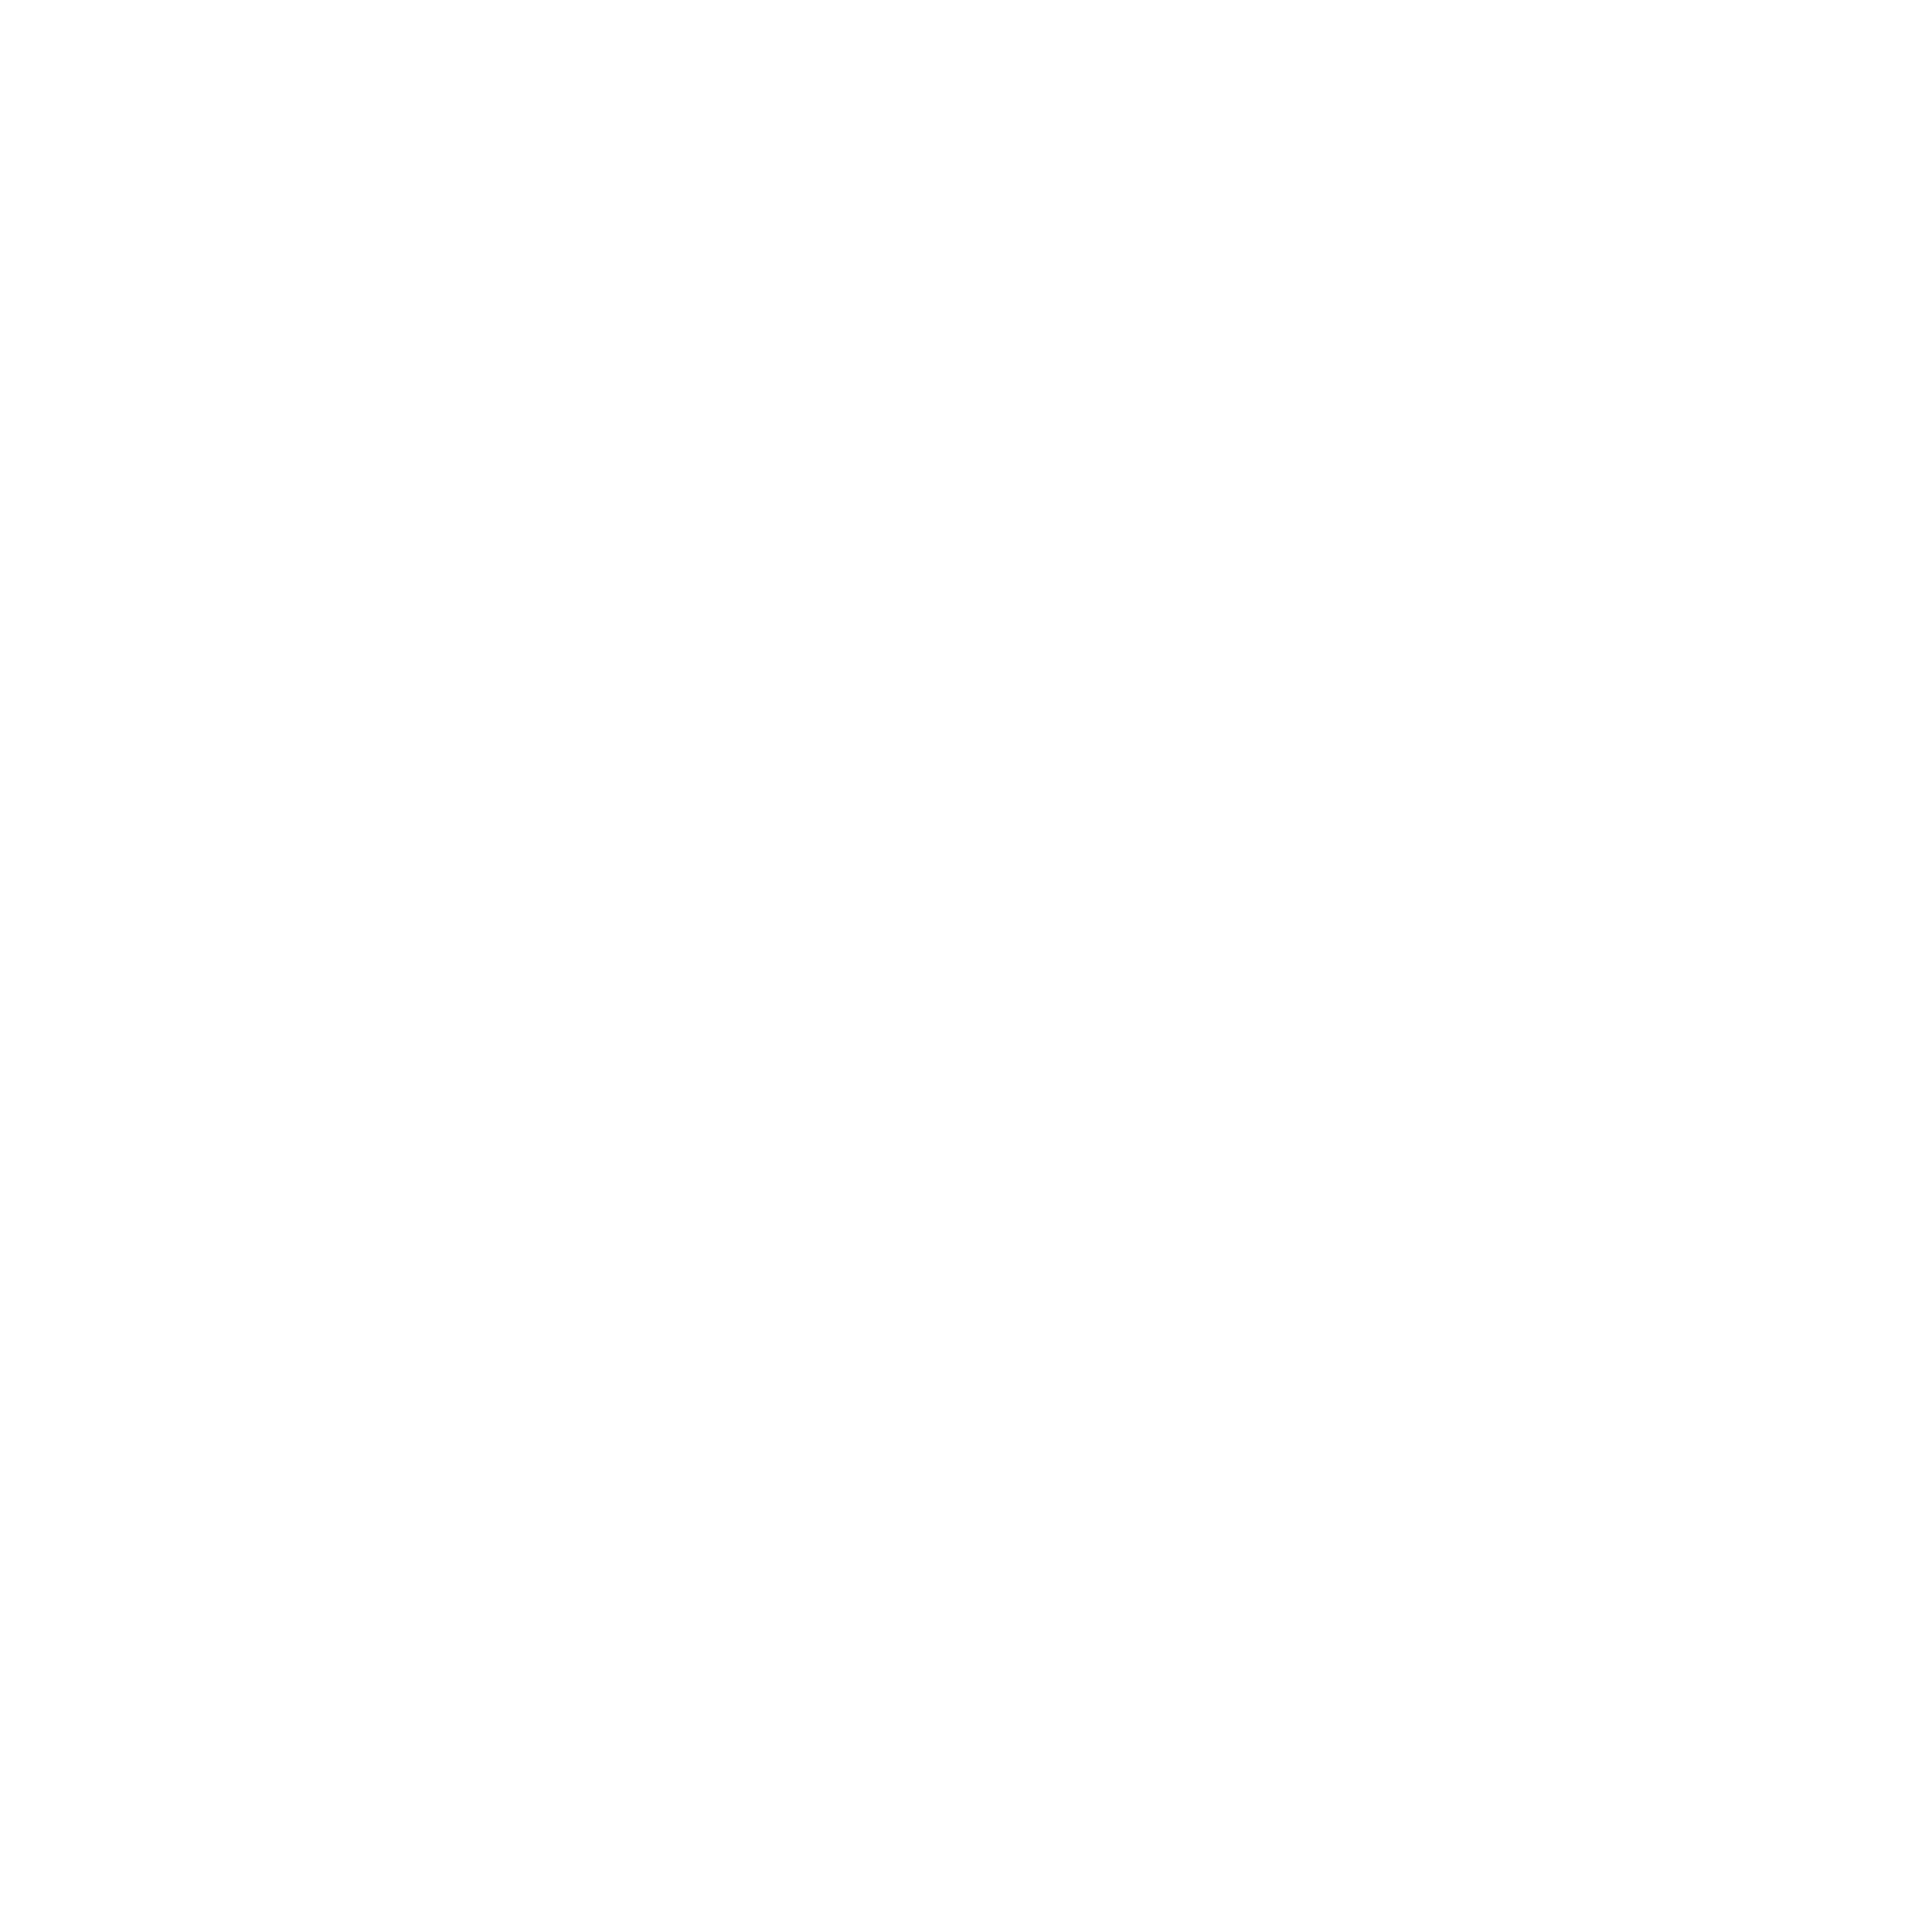 FQCC logo